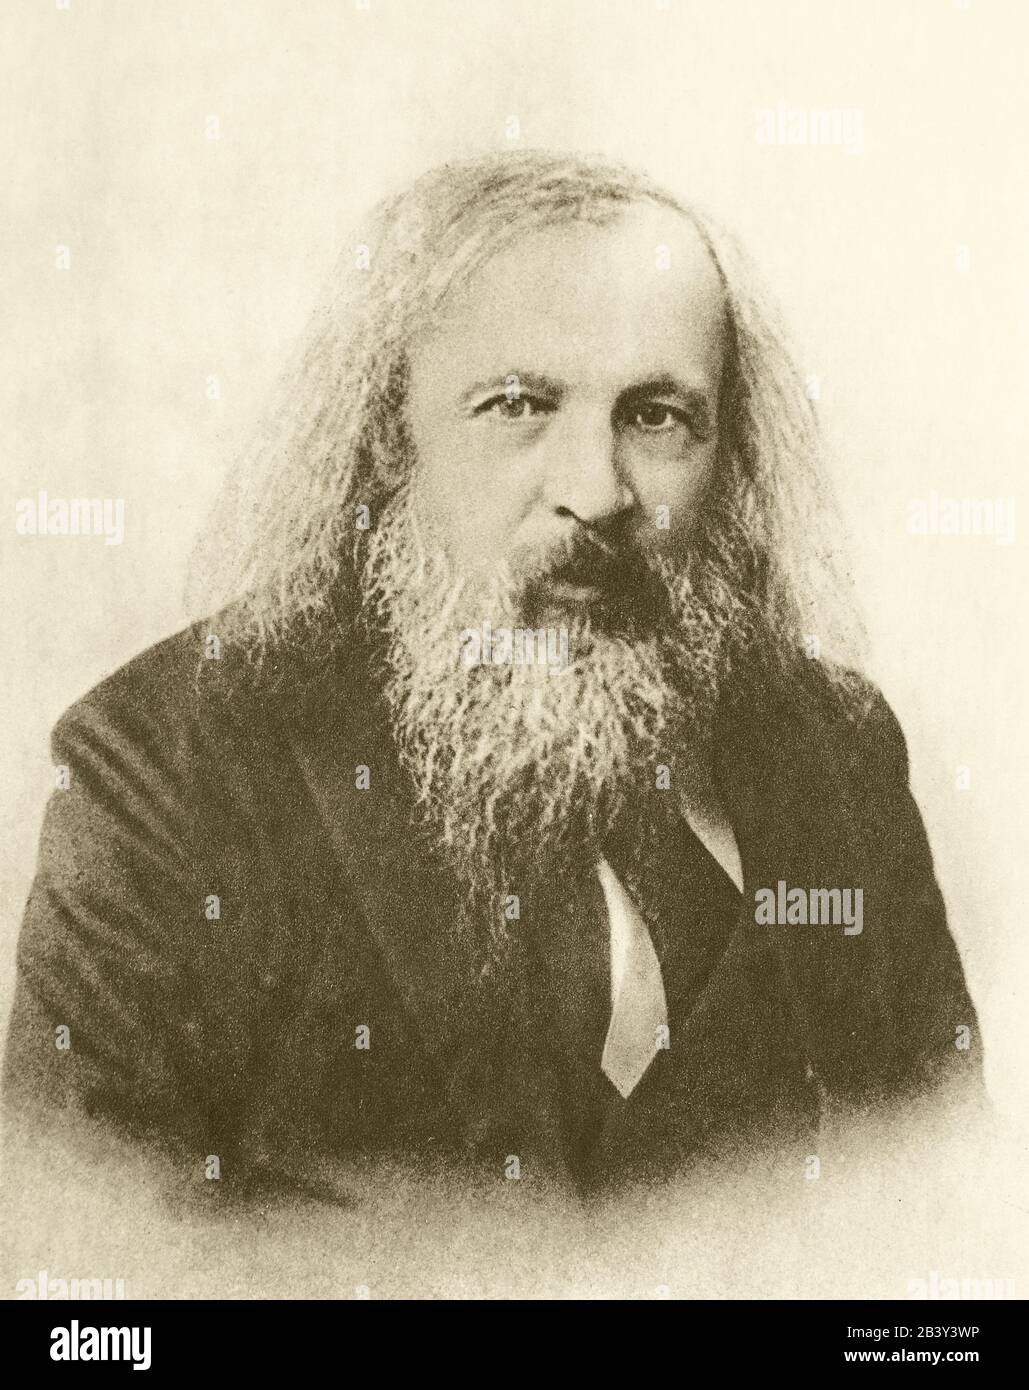 Ritratto fotografico di D.I. Mendelev. Foto Stock